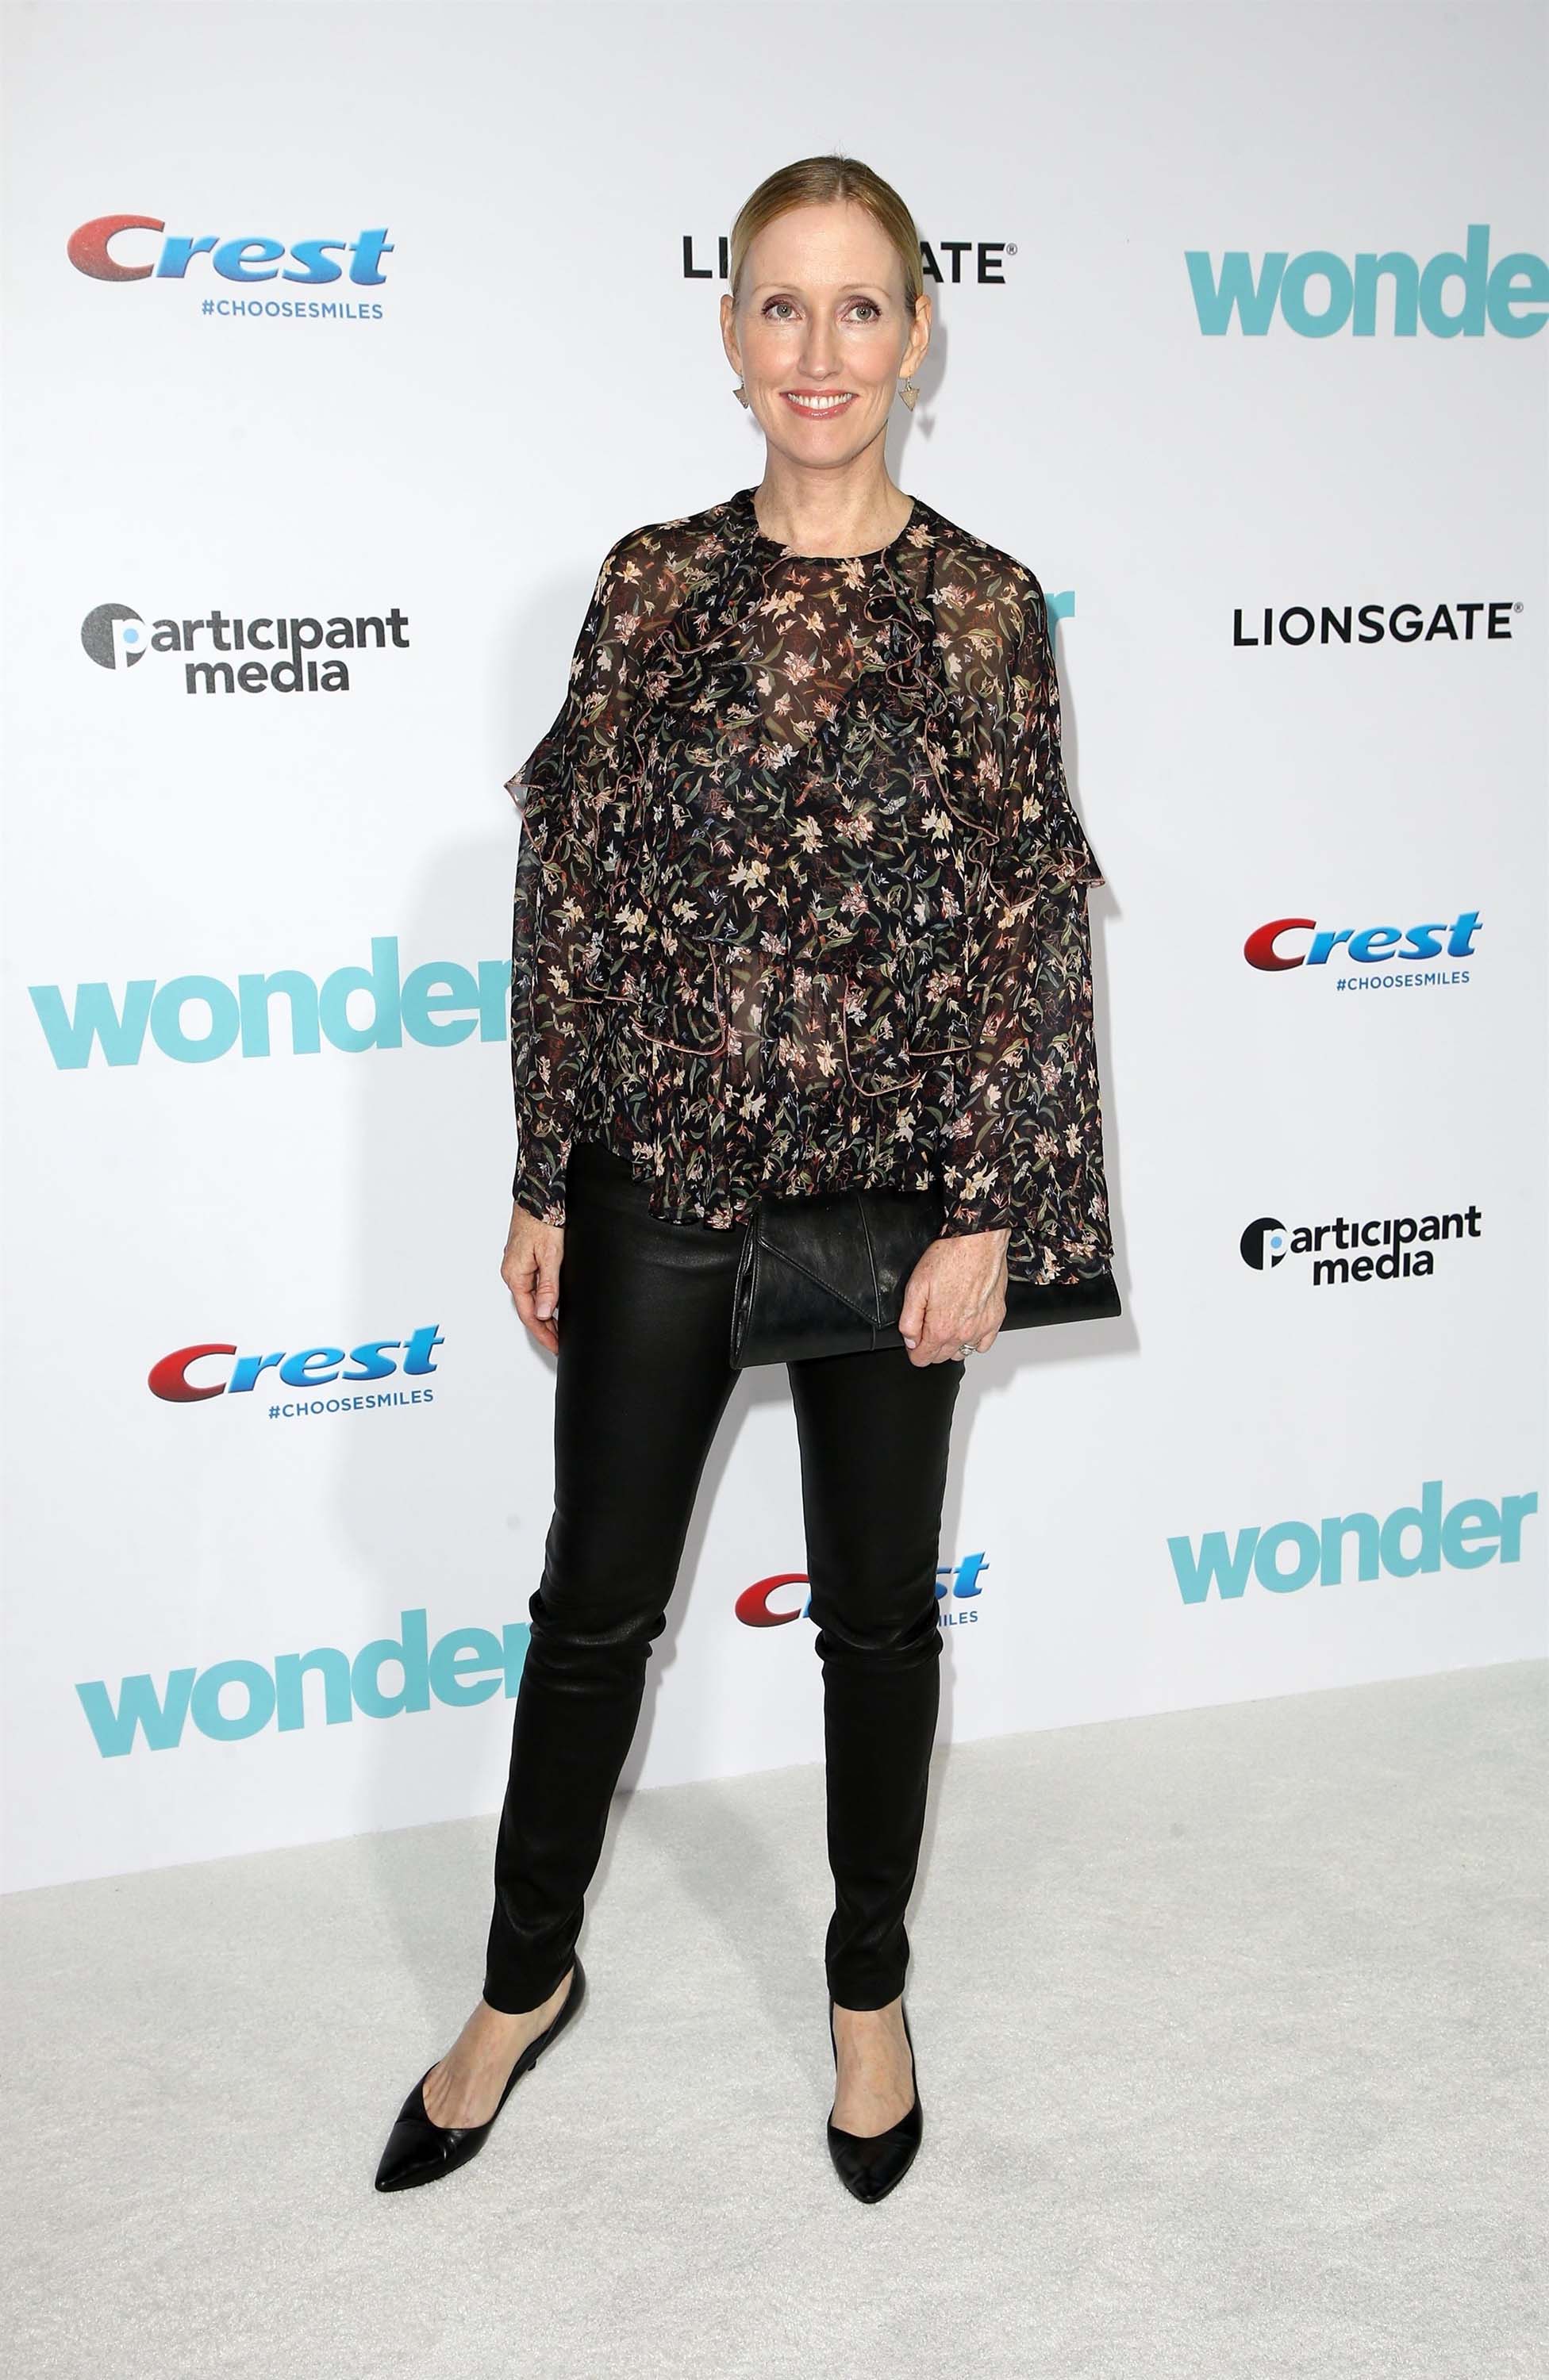 Janel Moloney attends Wonder film premiere